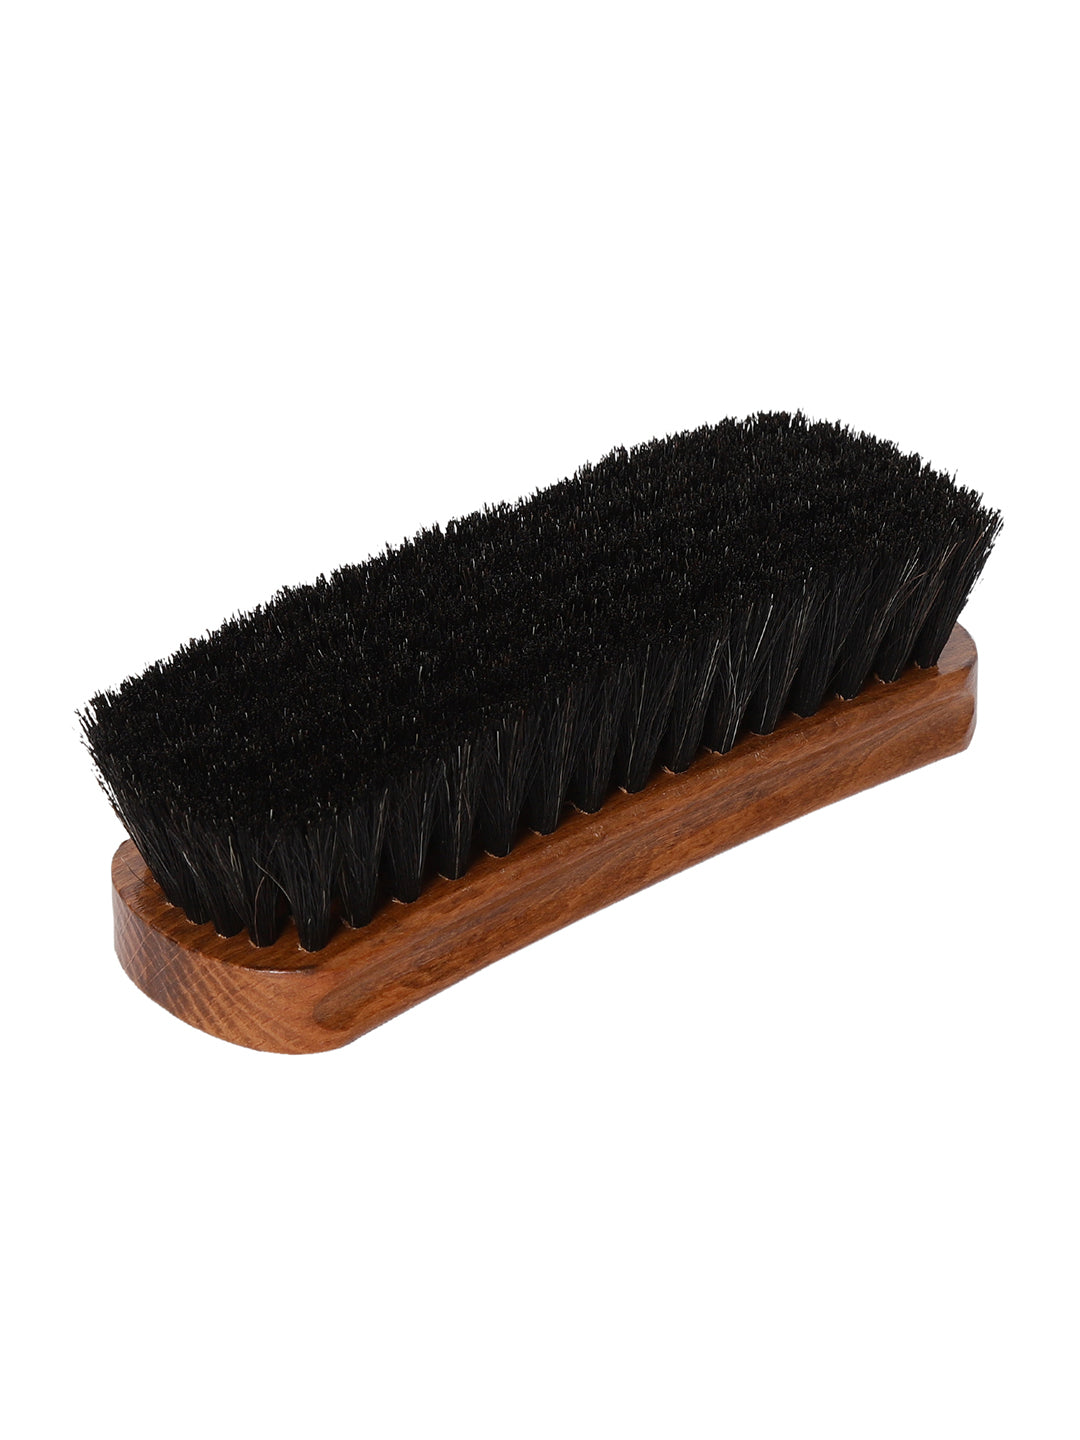 BAGATT Black Premium Shoe Brush